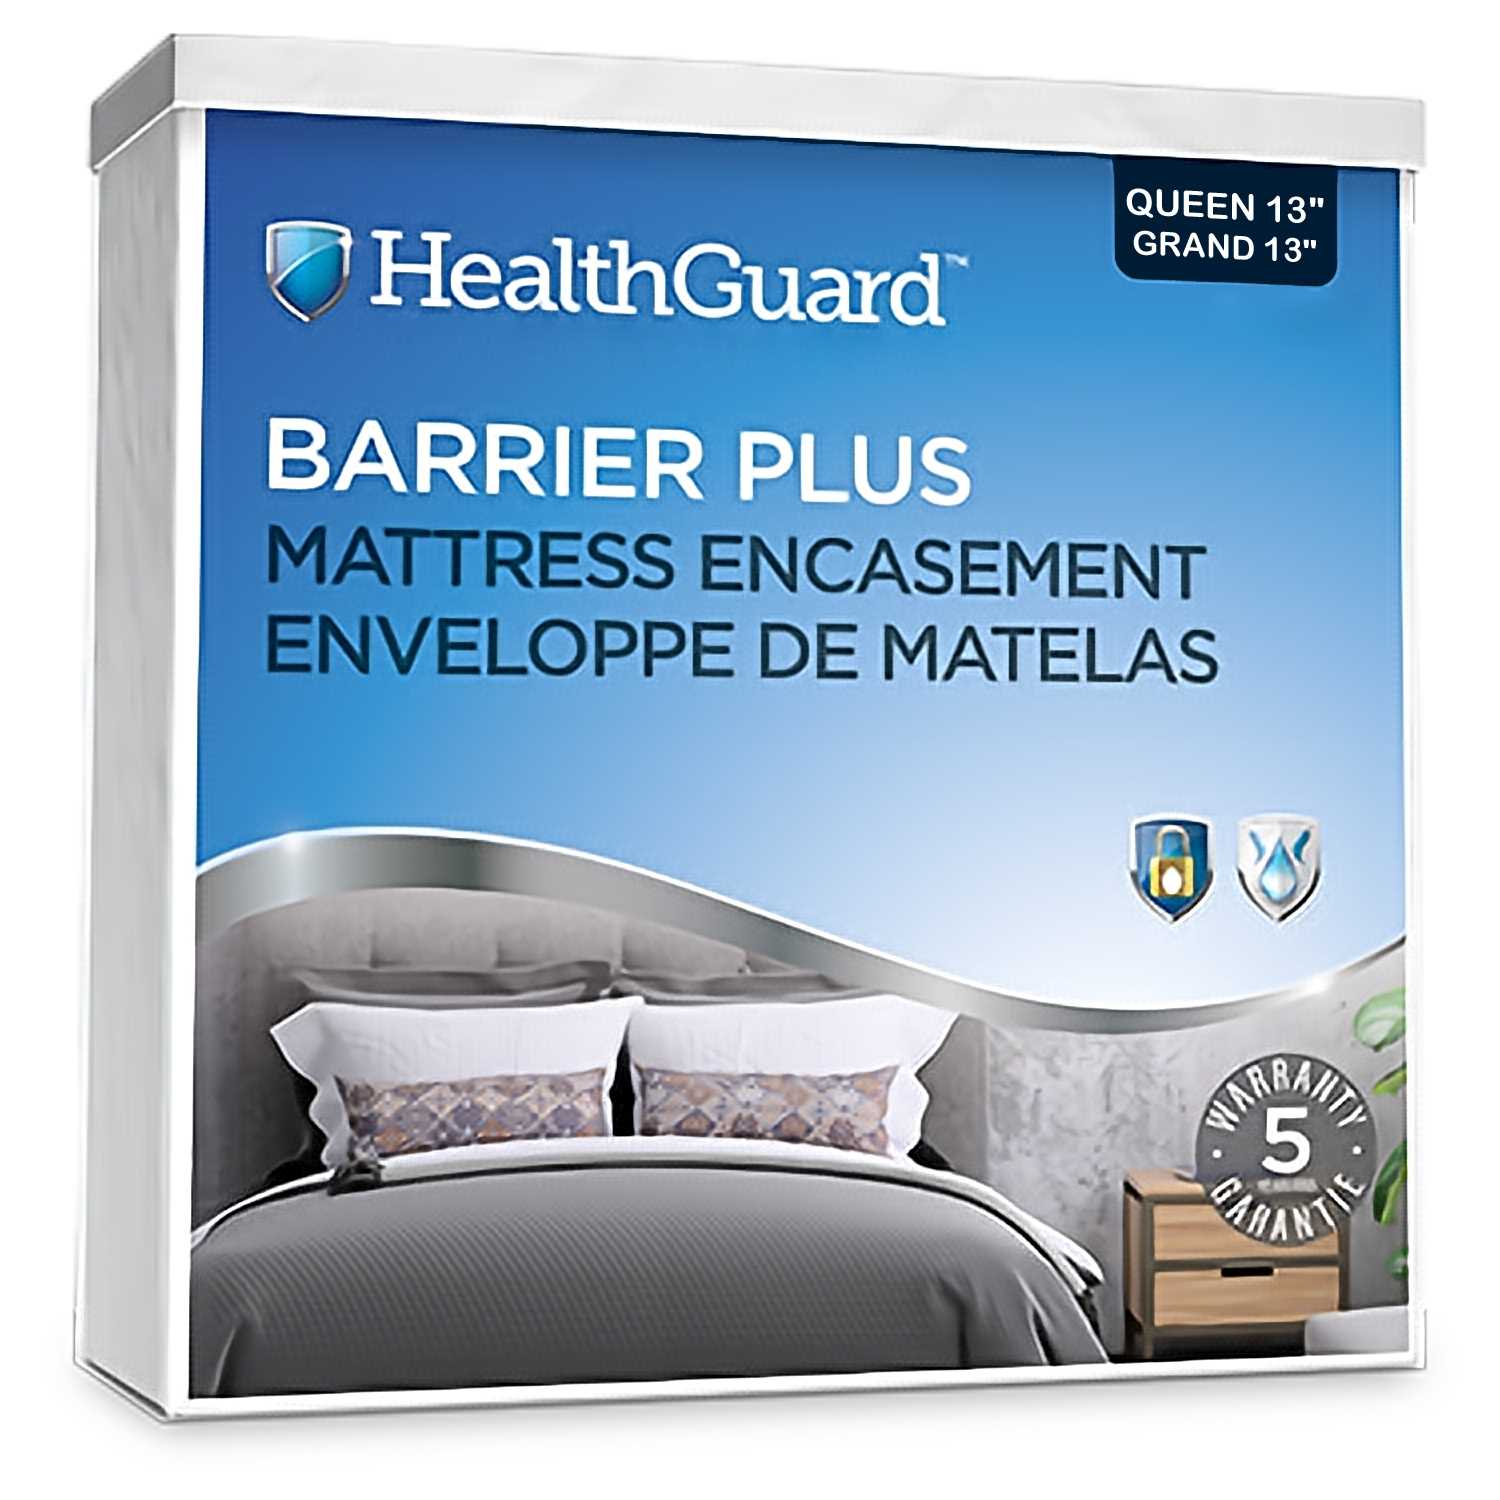 Health Guard Barrier Plus Mattress Encasement Queen